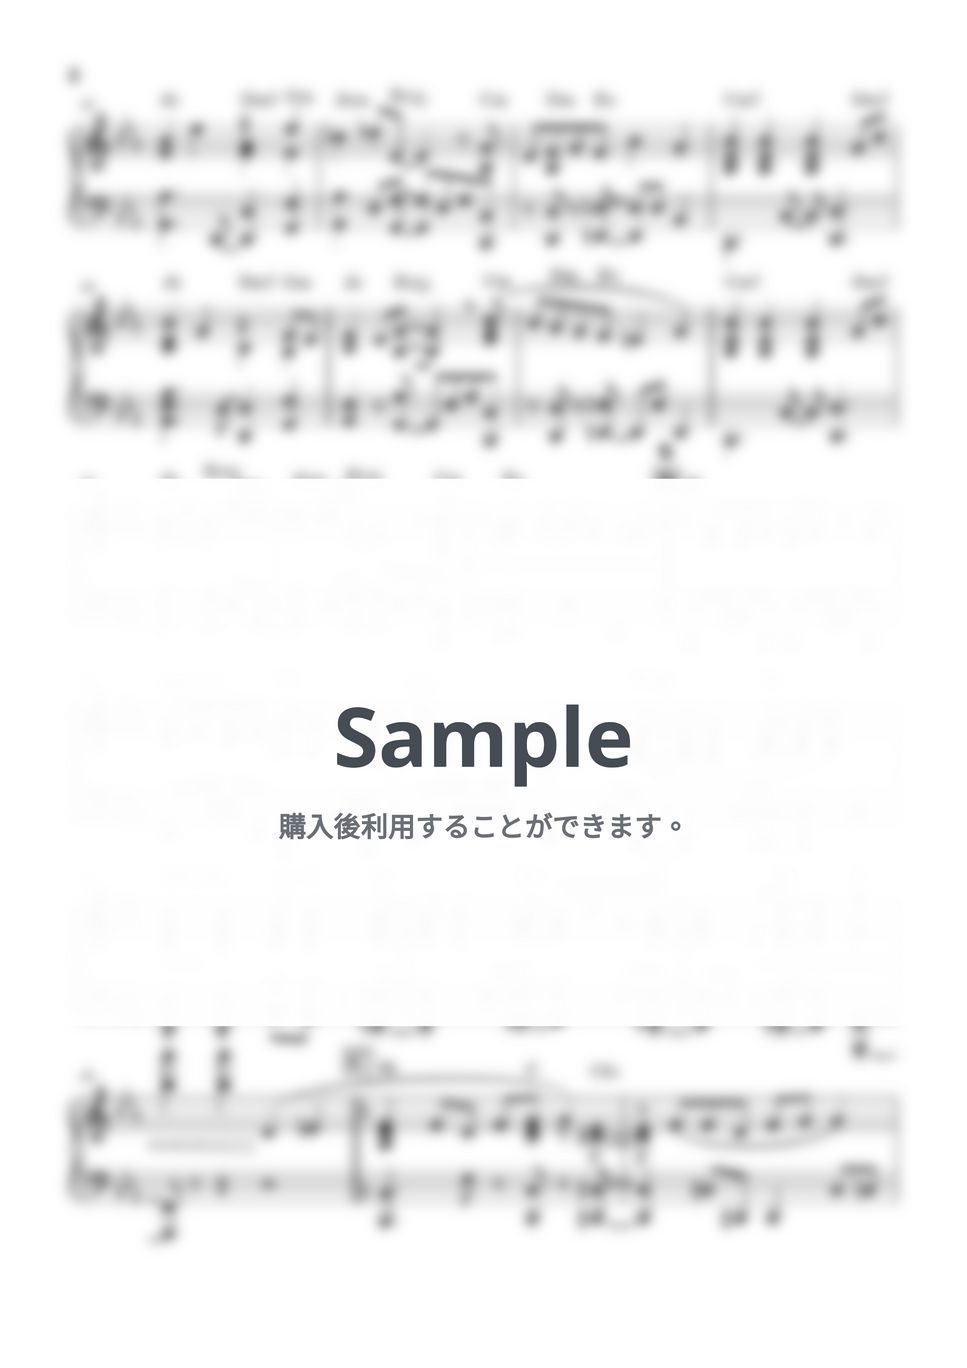 星野源 - Cube (ピアノソロ / コード付) by あーちゅーぶ